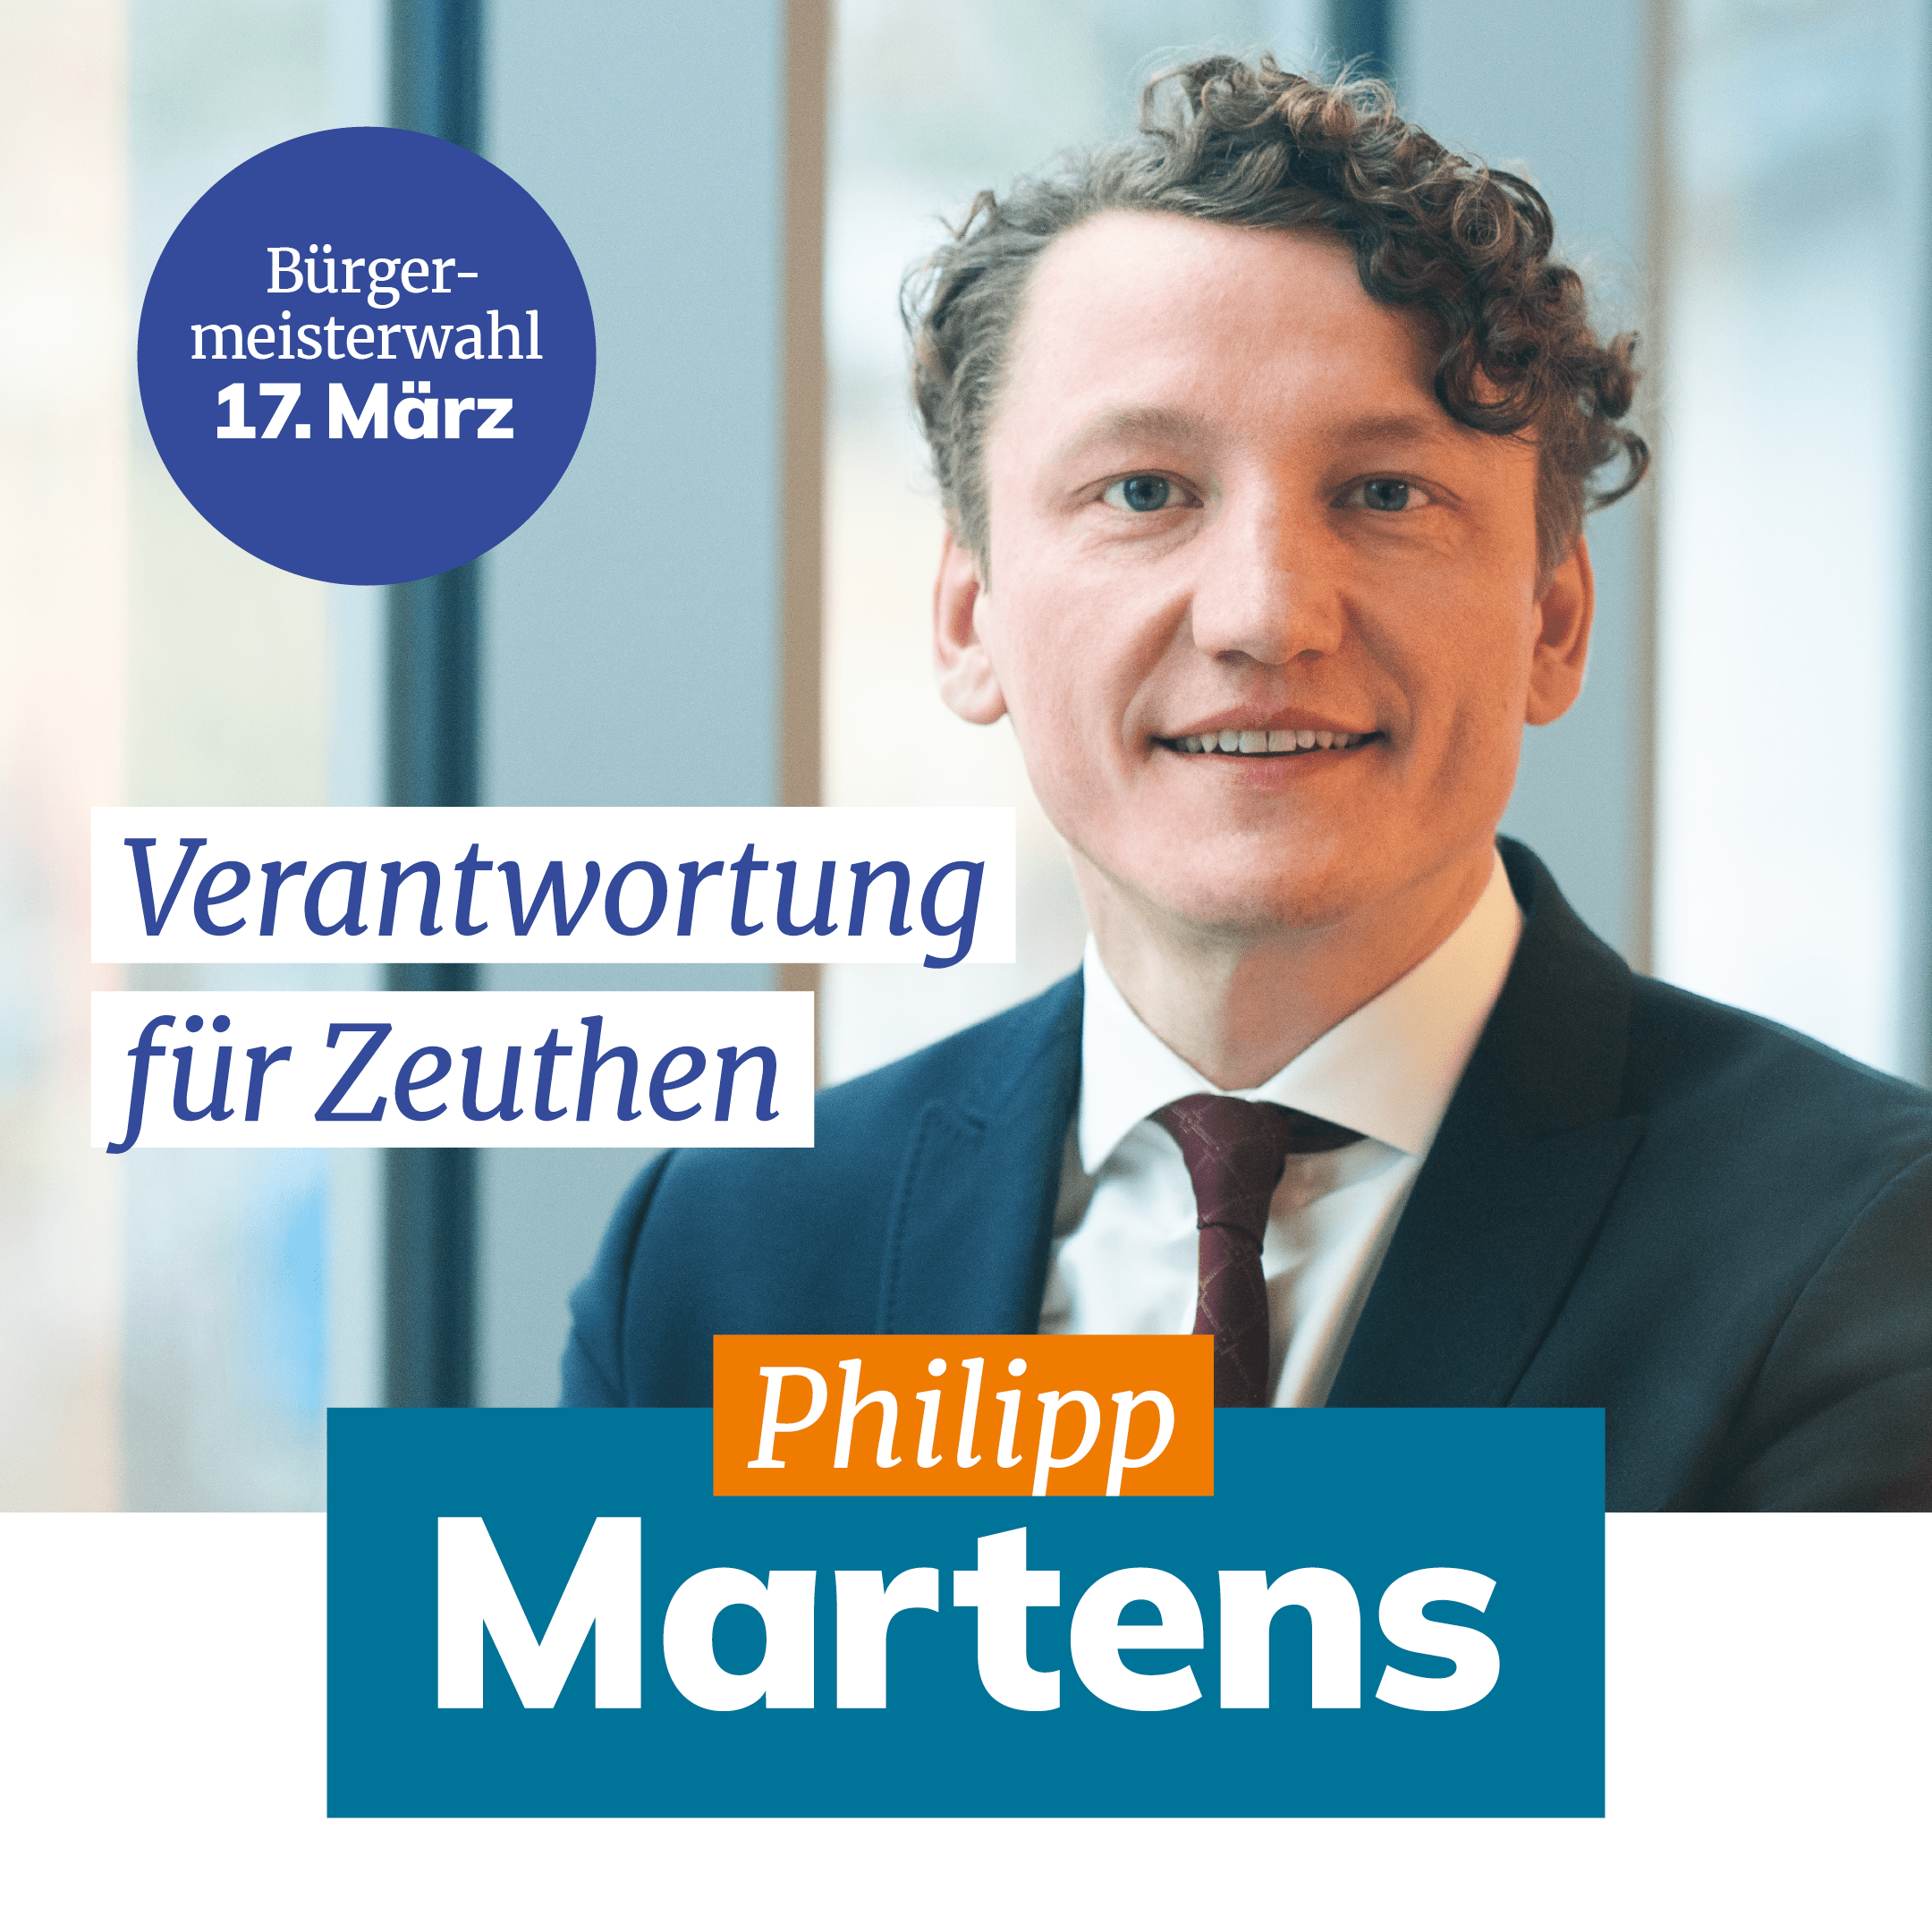 Philipp Martens im Anzug mit Krawatte. "Der Slogan "Verantwortung für Zeuthen" steht neben ihm.